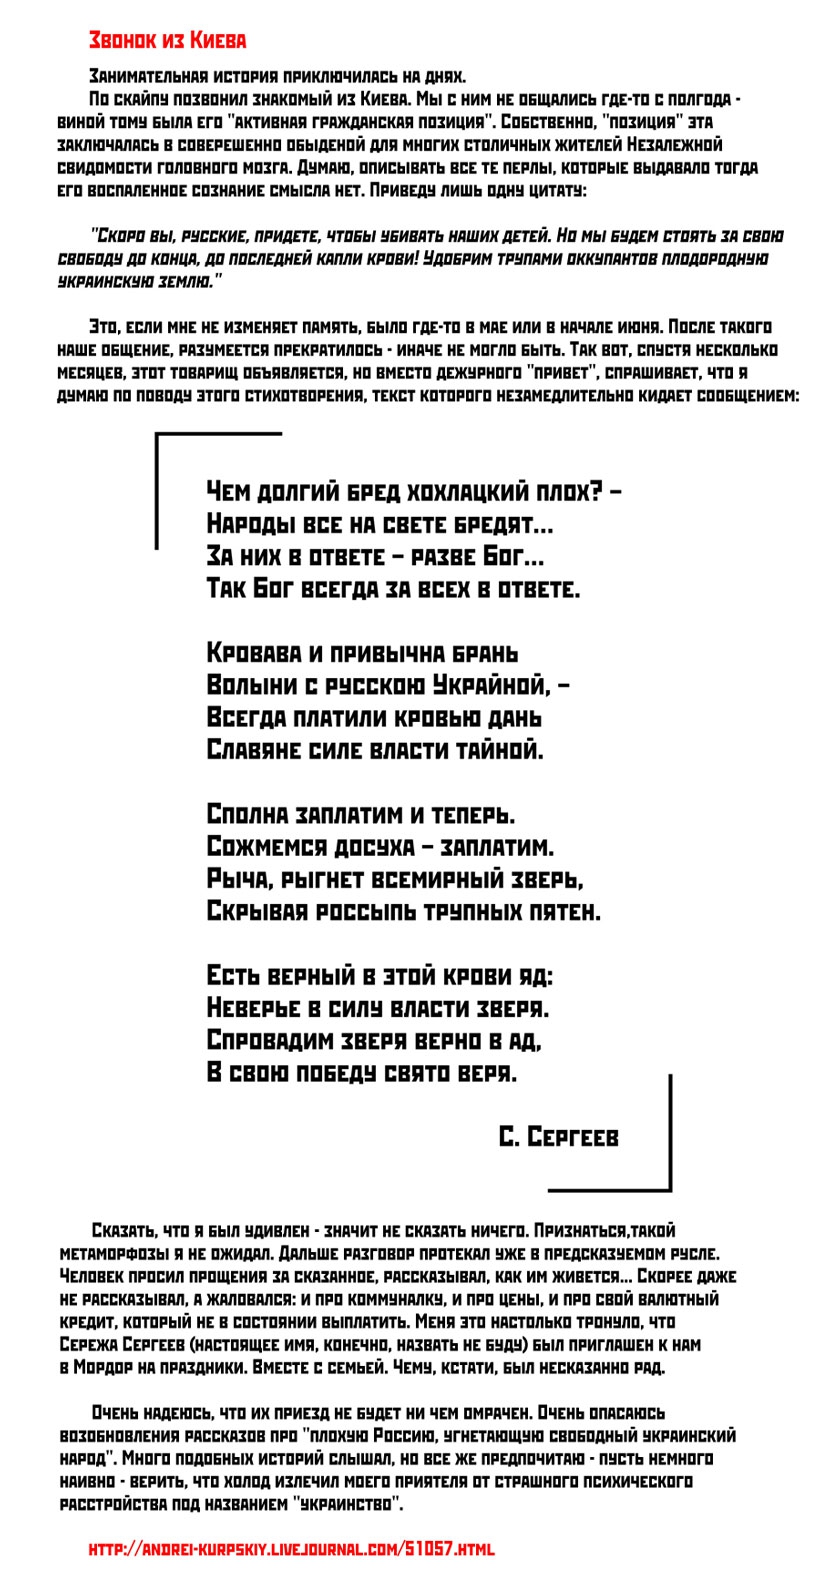 Бродский на независимость украины стих текст русском